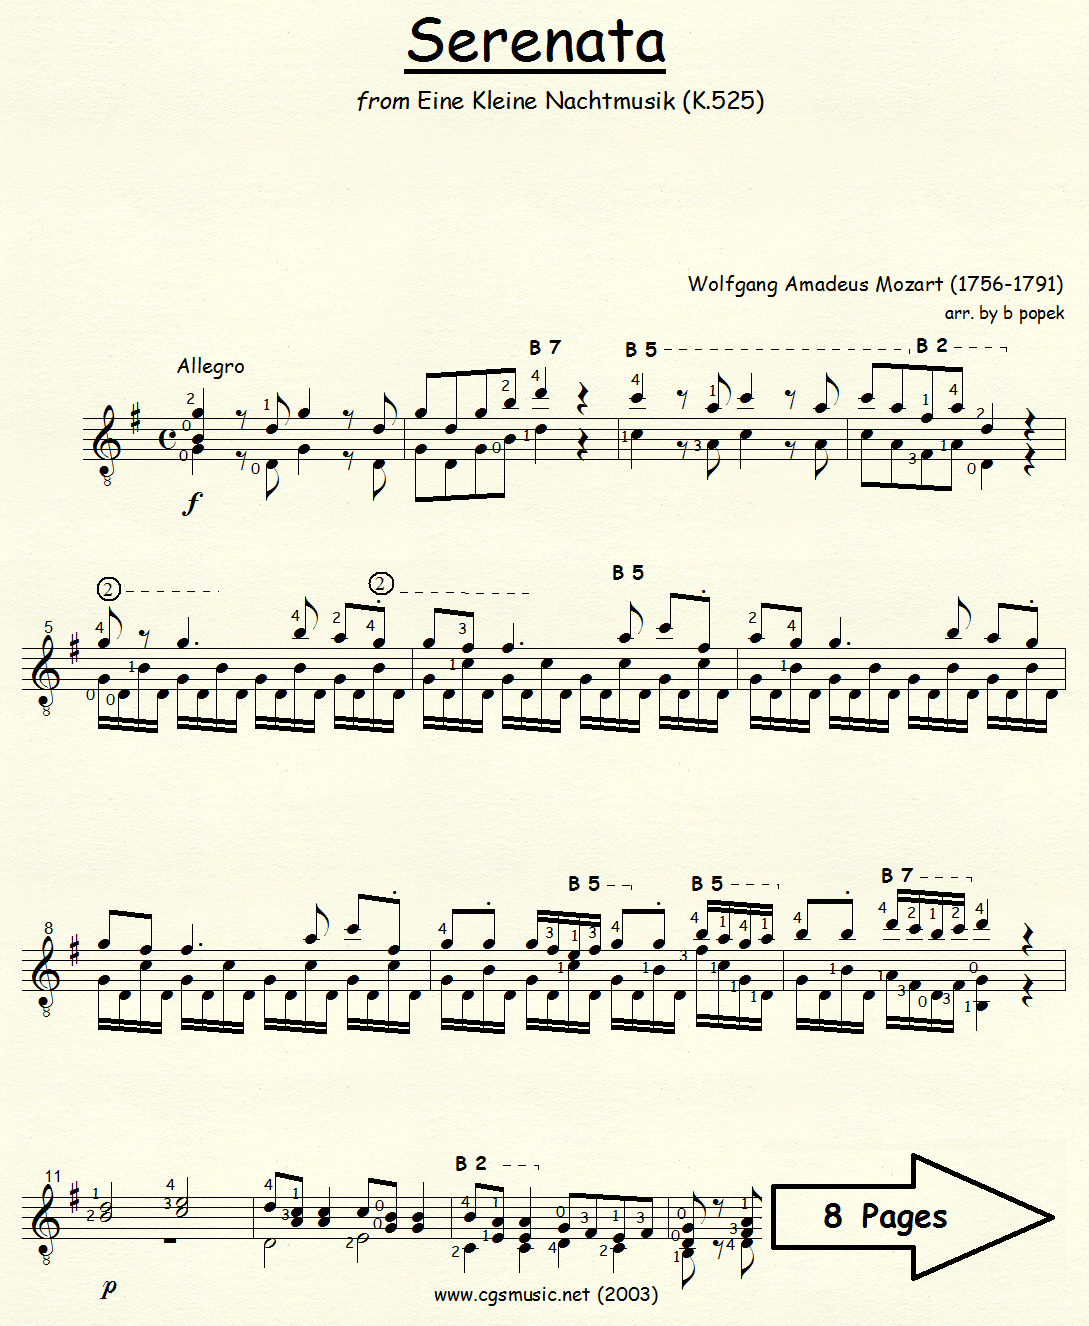 Serenata from Eine Kleine Nachtmusik (Mozart) for Classical Guitar in Standard Notation